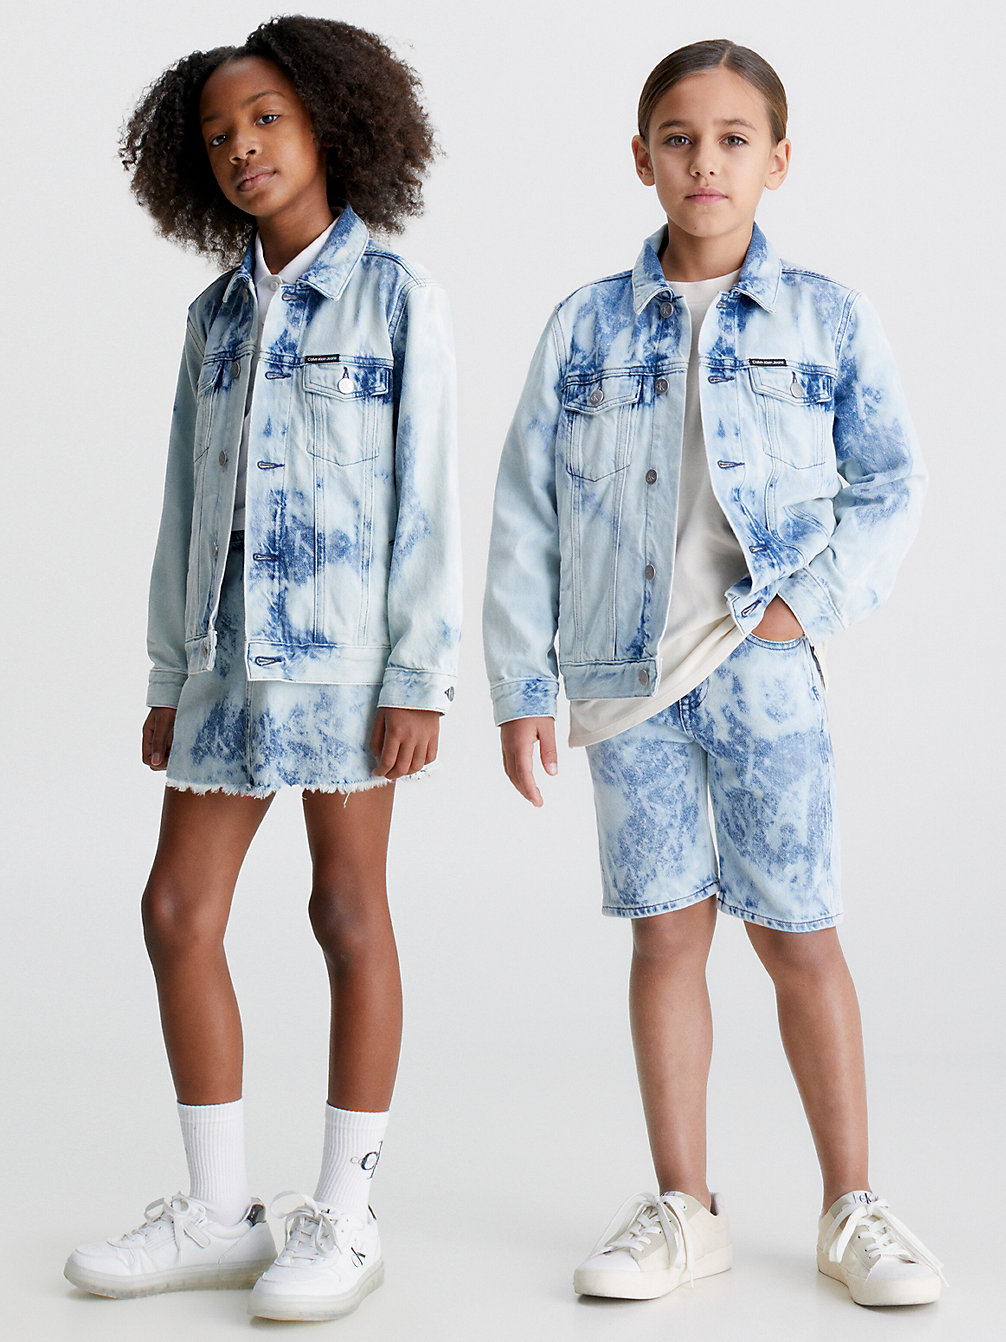 AOP LAZER TRUCKER Kids Denim Tie Dye Jacket undefined kids unisex Calvin Klein